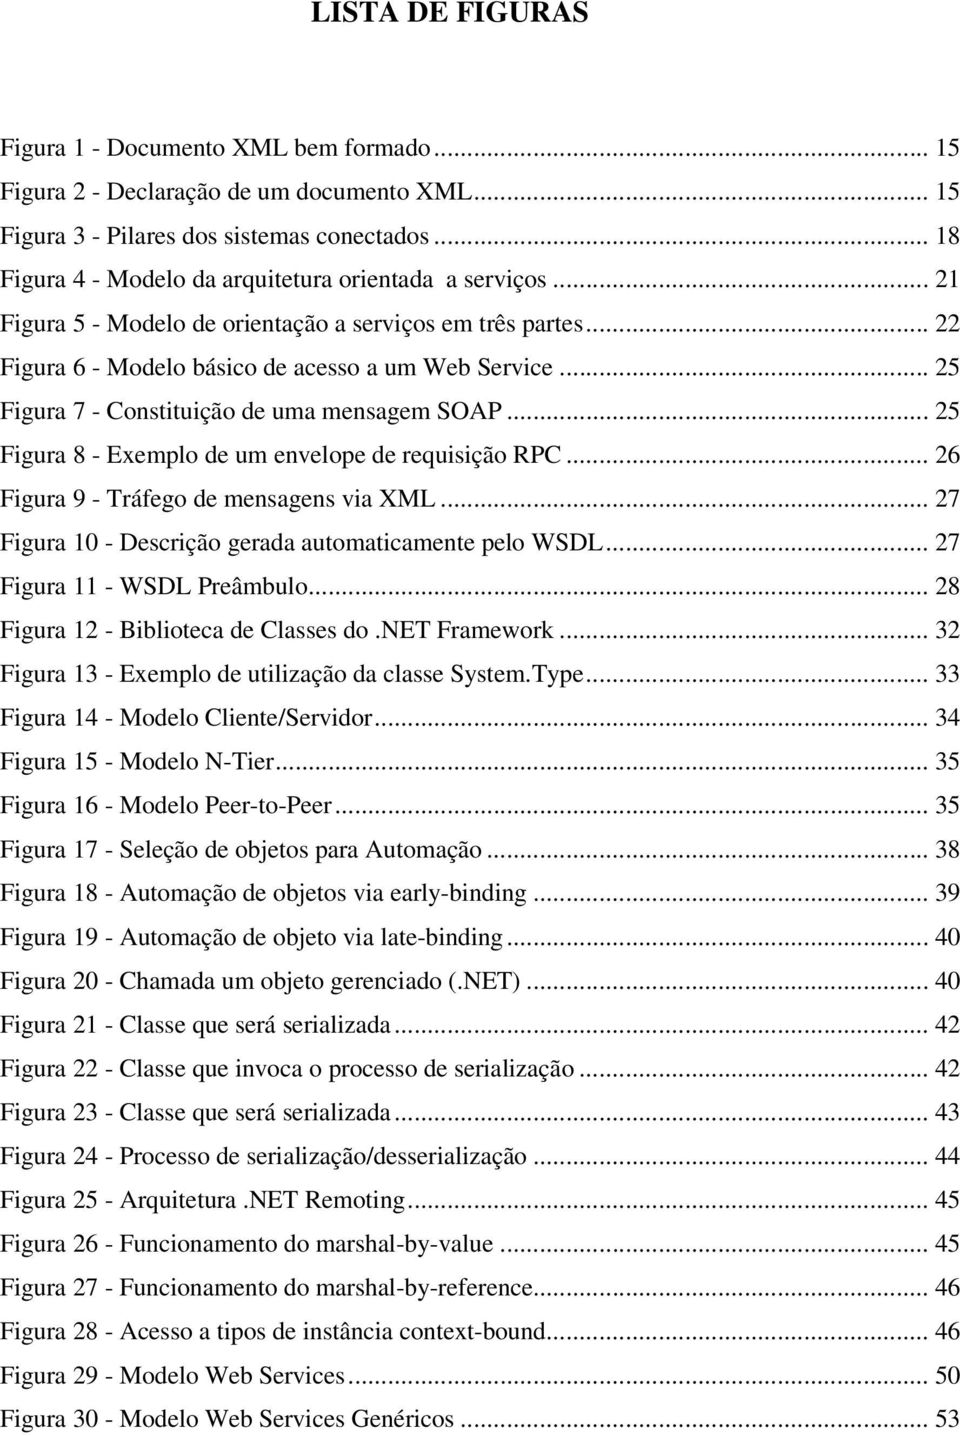 .. 25 Figura 7 - Constituição de uma mensagem SOAP... 25 Figura 8 - Exemplo de um envelope de requisição RPC... 26 Figura 9 - Tráfego de mensagens via XML.